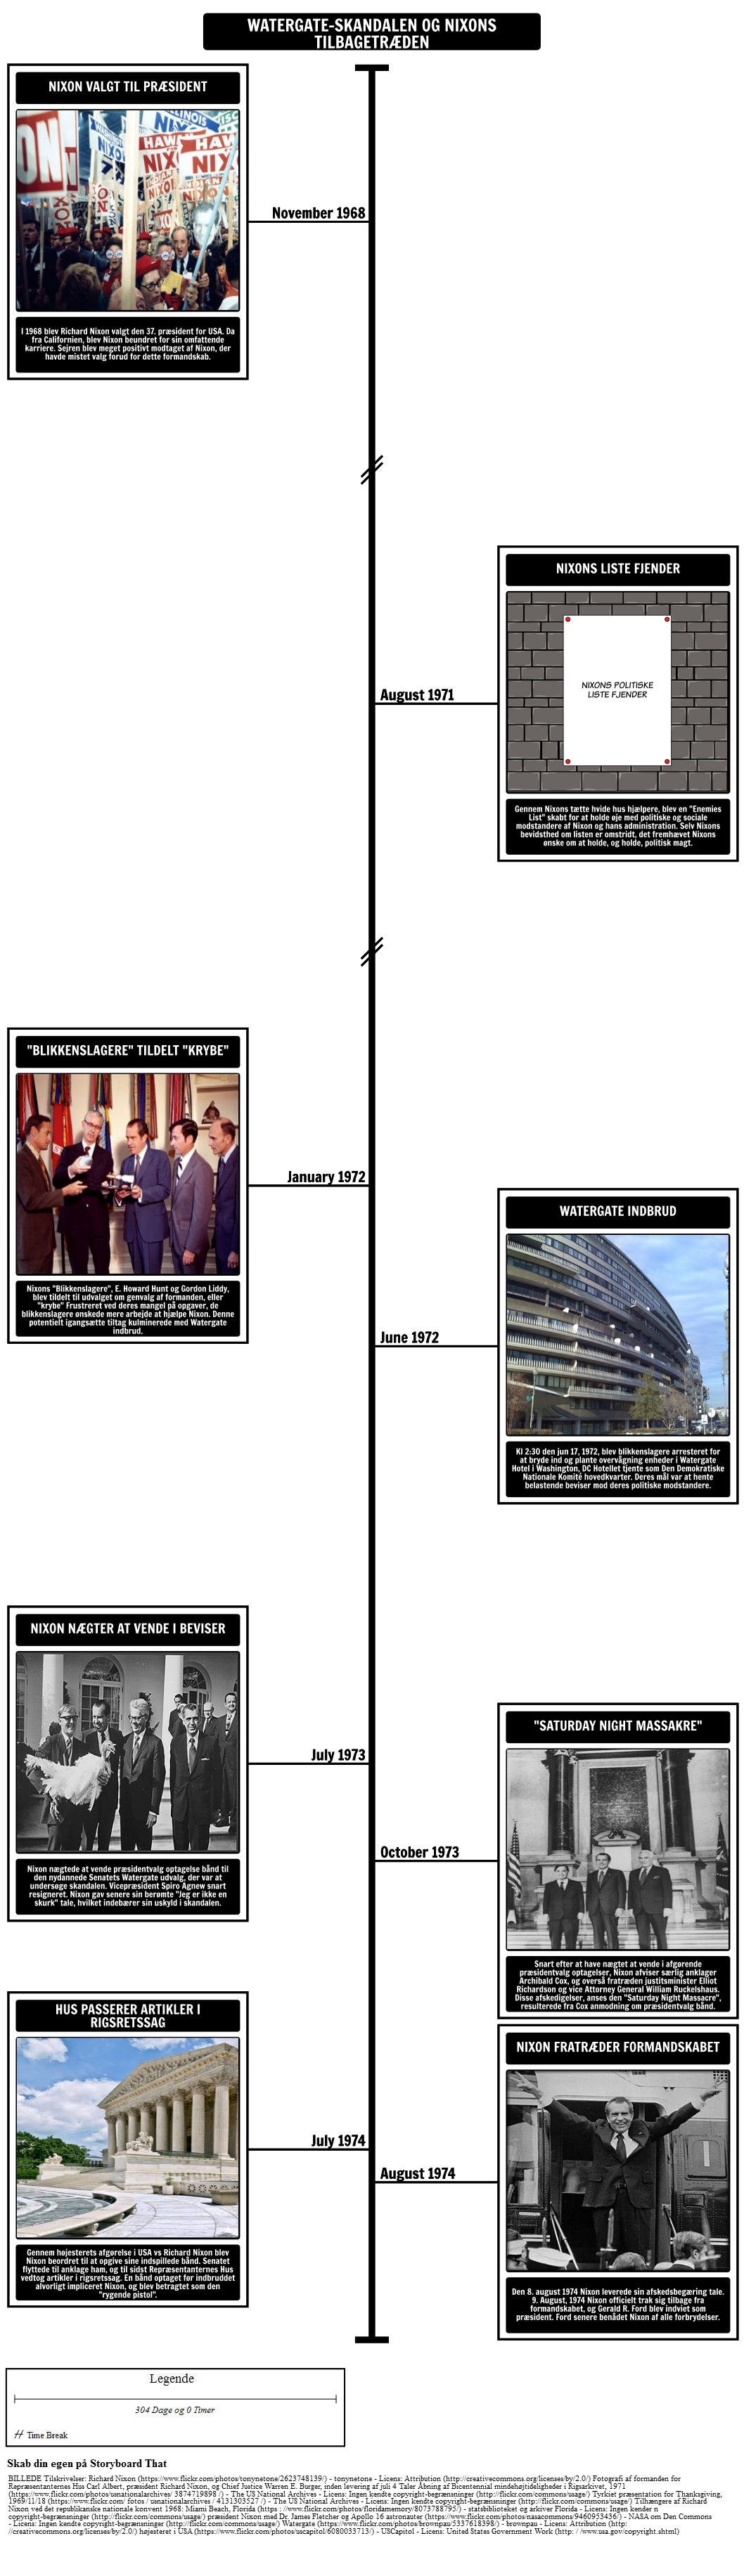 Watergate-skandalen Tidslinje og Nixons Udmeldelse